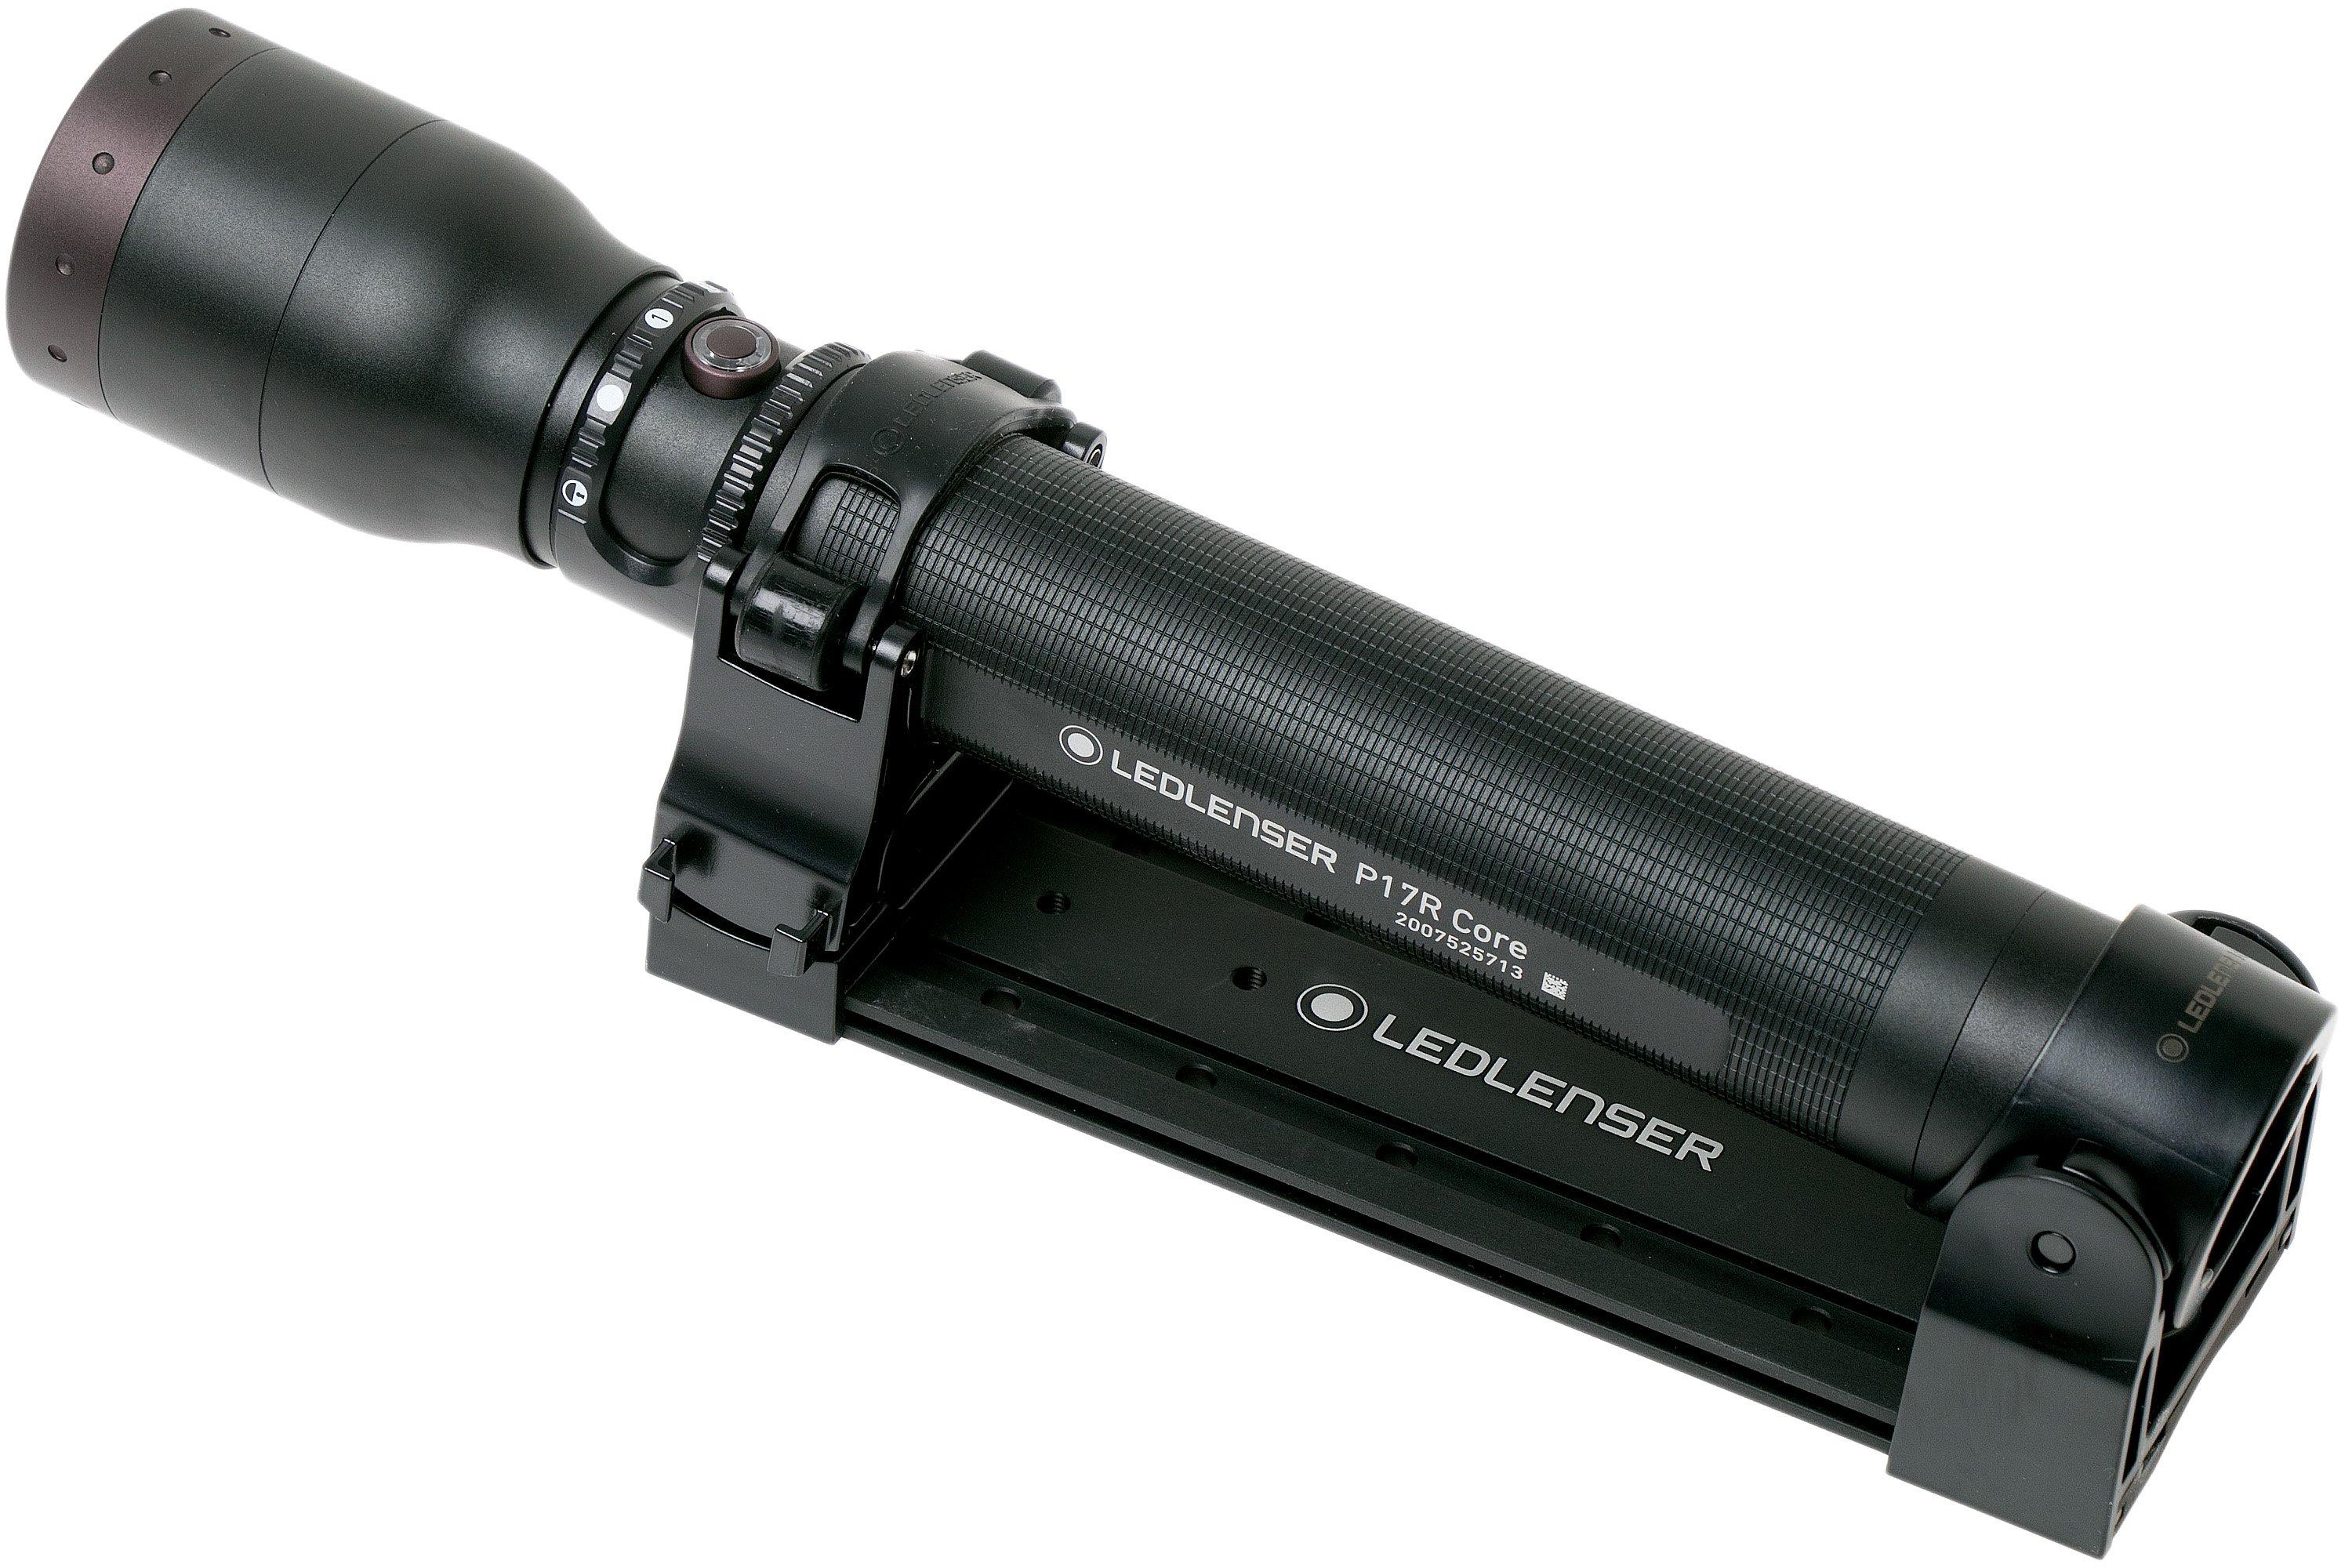 Ledlenser P17R Core rechargeable flashlight